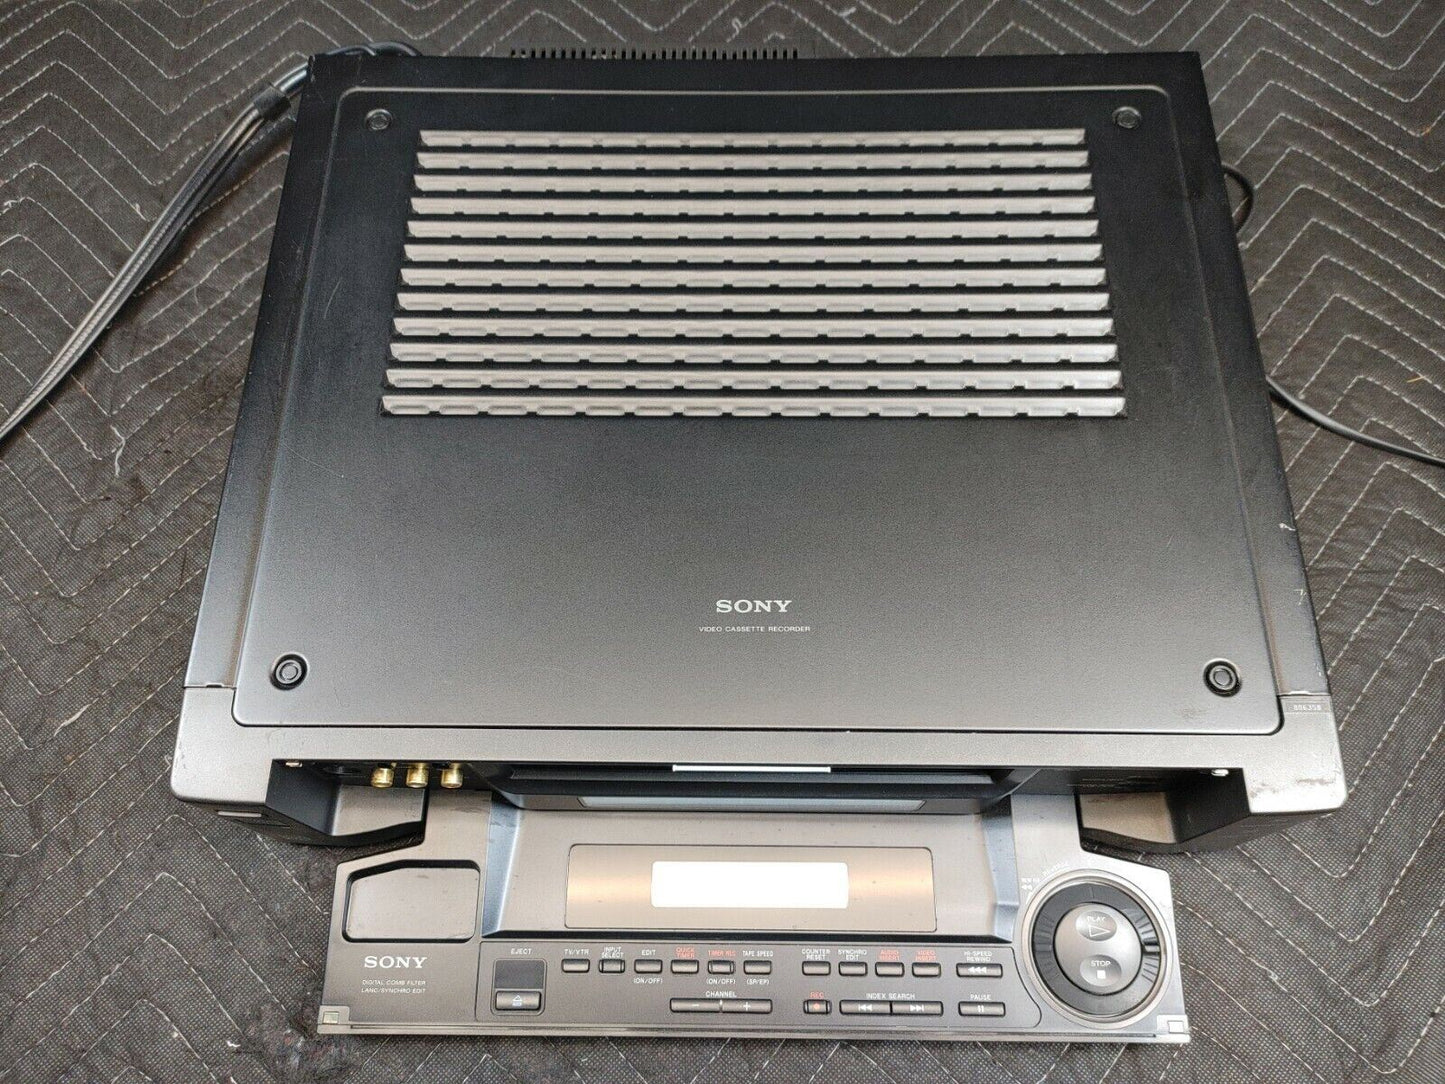 Sony SLV-R1000 Video Cassette Recorder S-VHS Hi-Fi Stereo